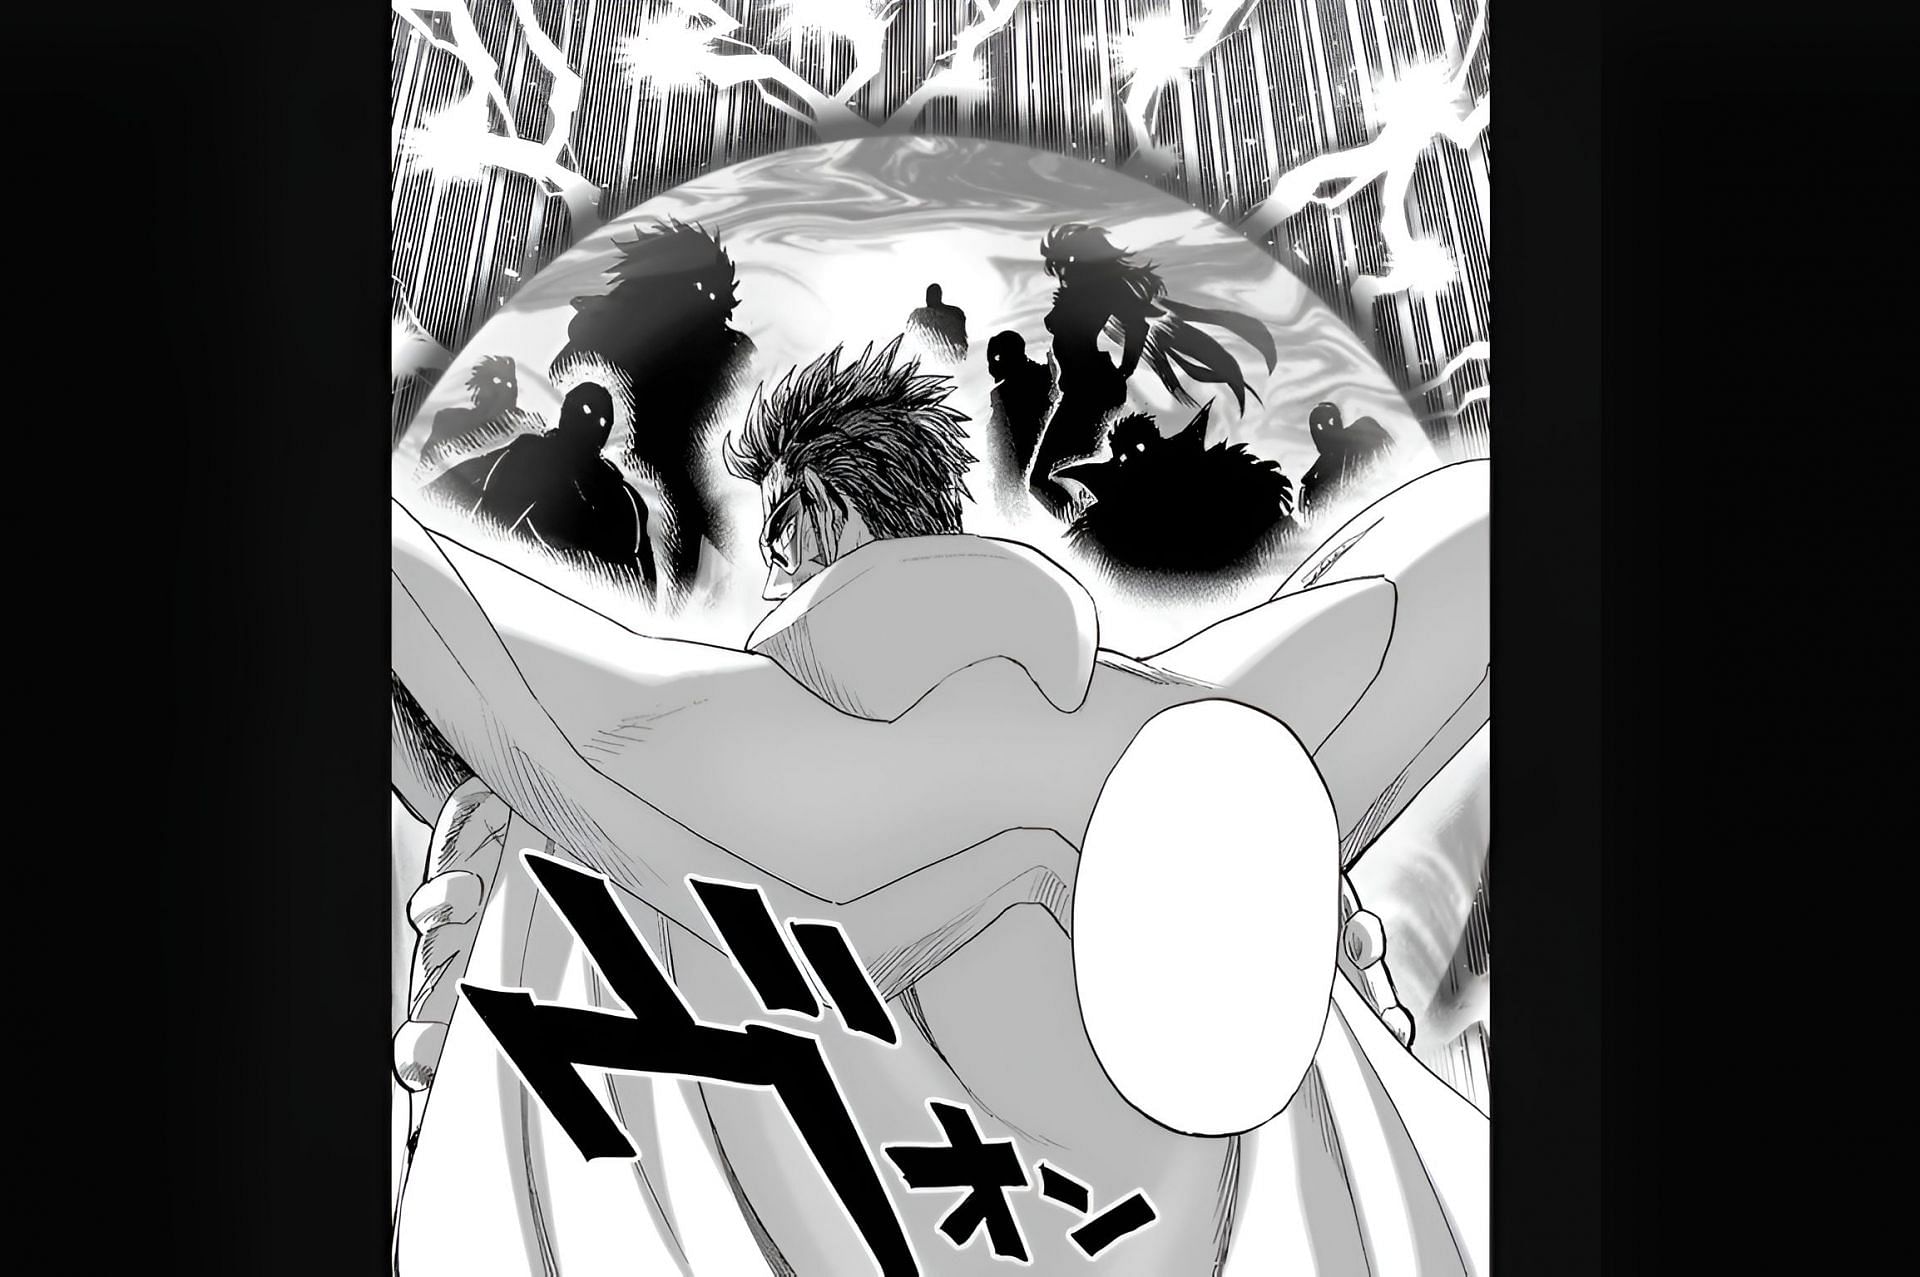 Blast and his comrades as seen in the manga series (Image via Shueisha/Yusuke Murata and ONE)